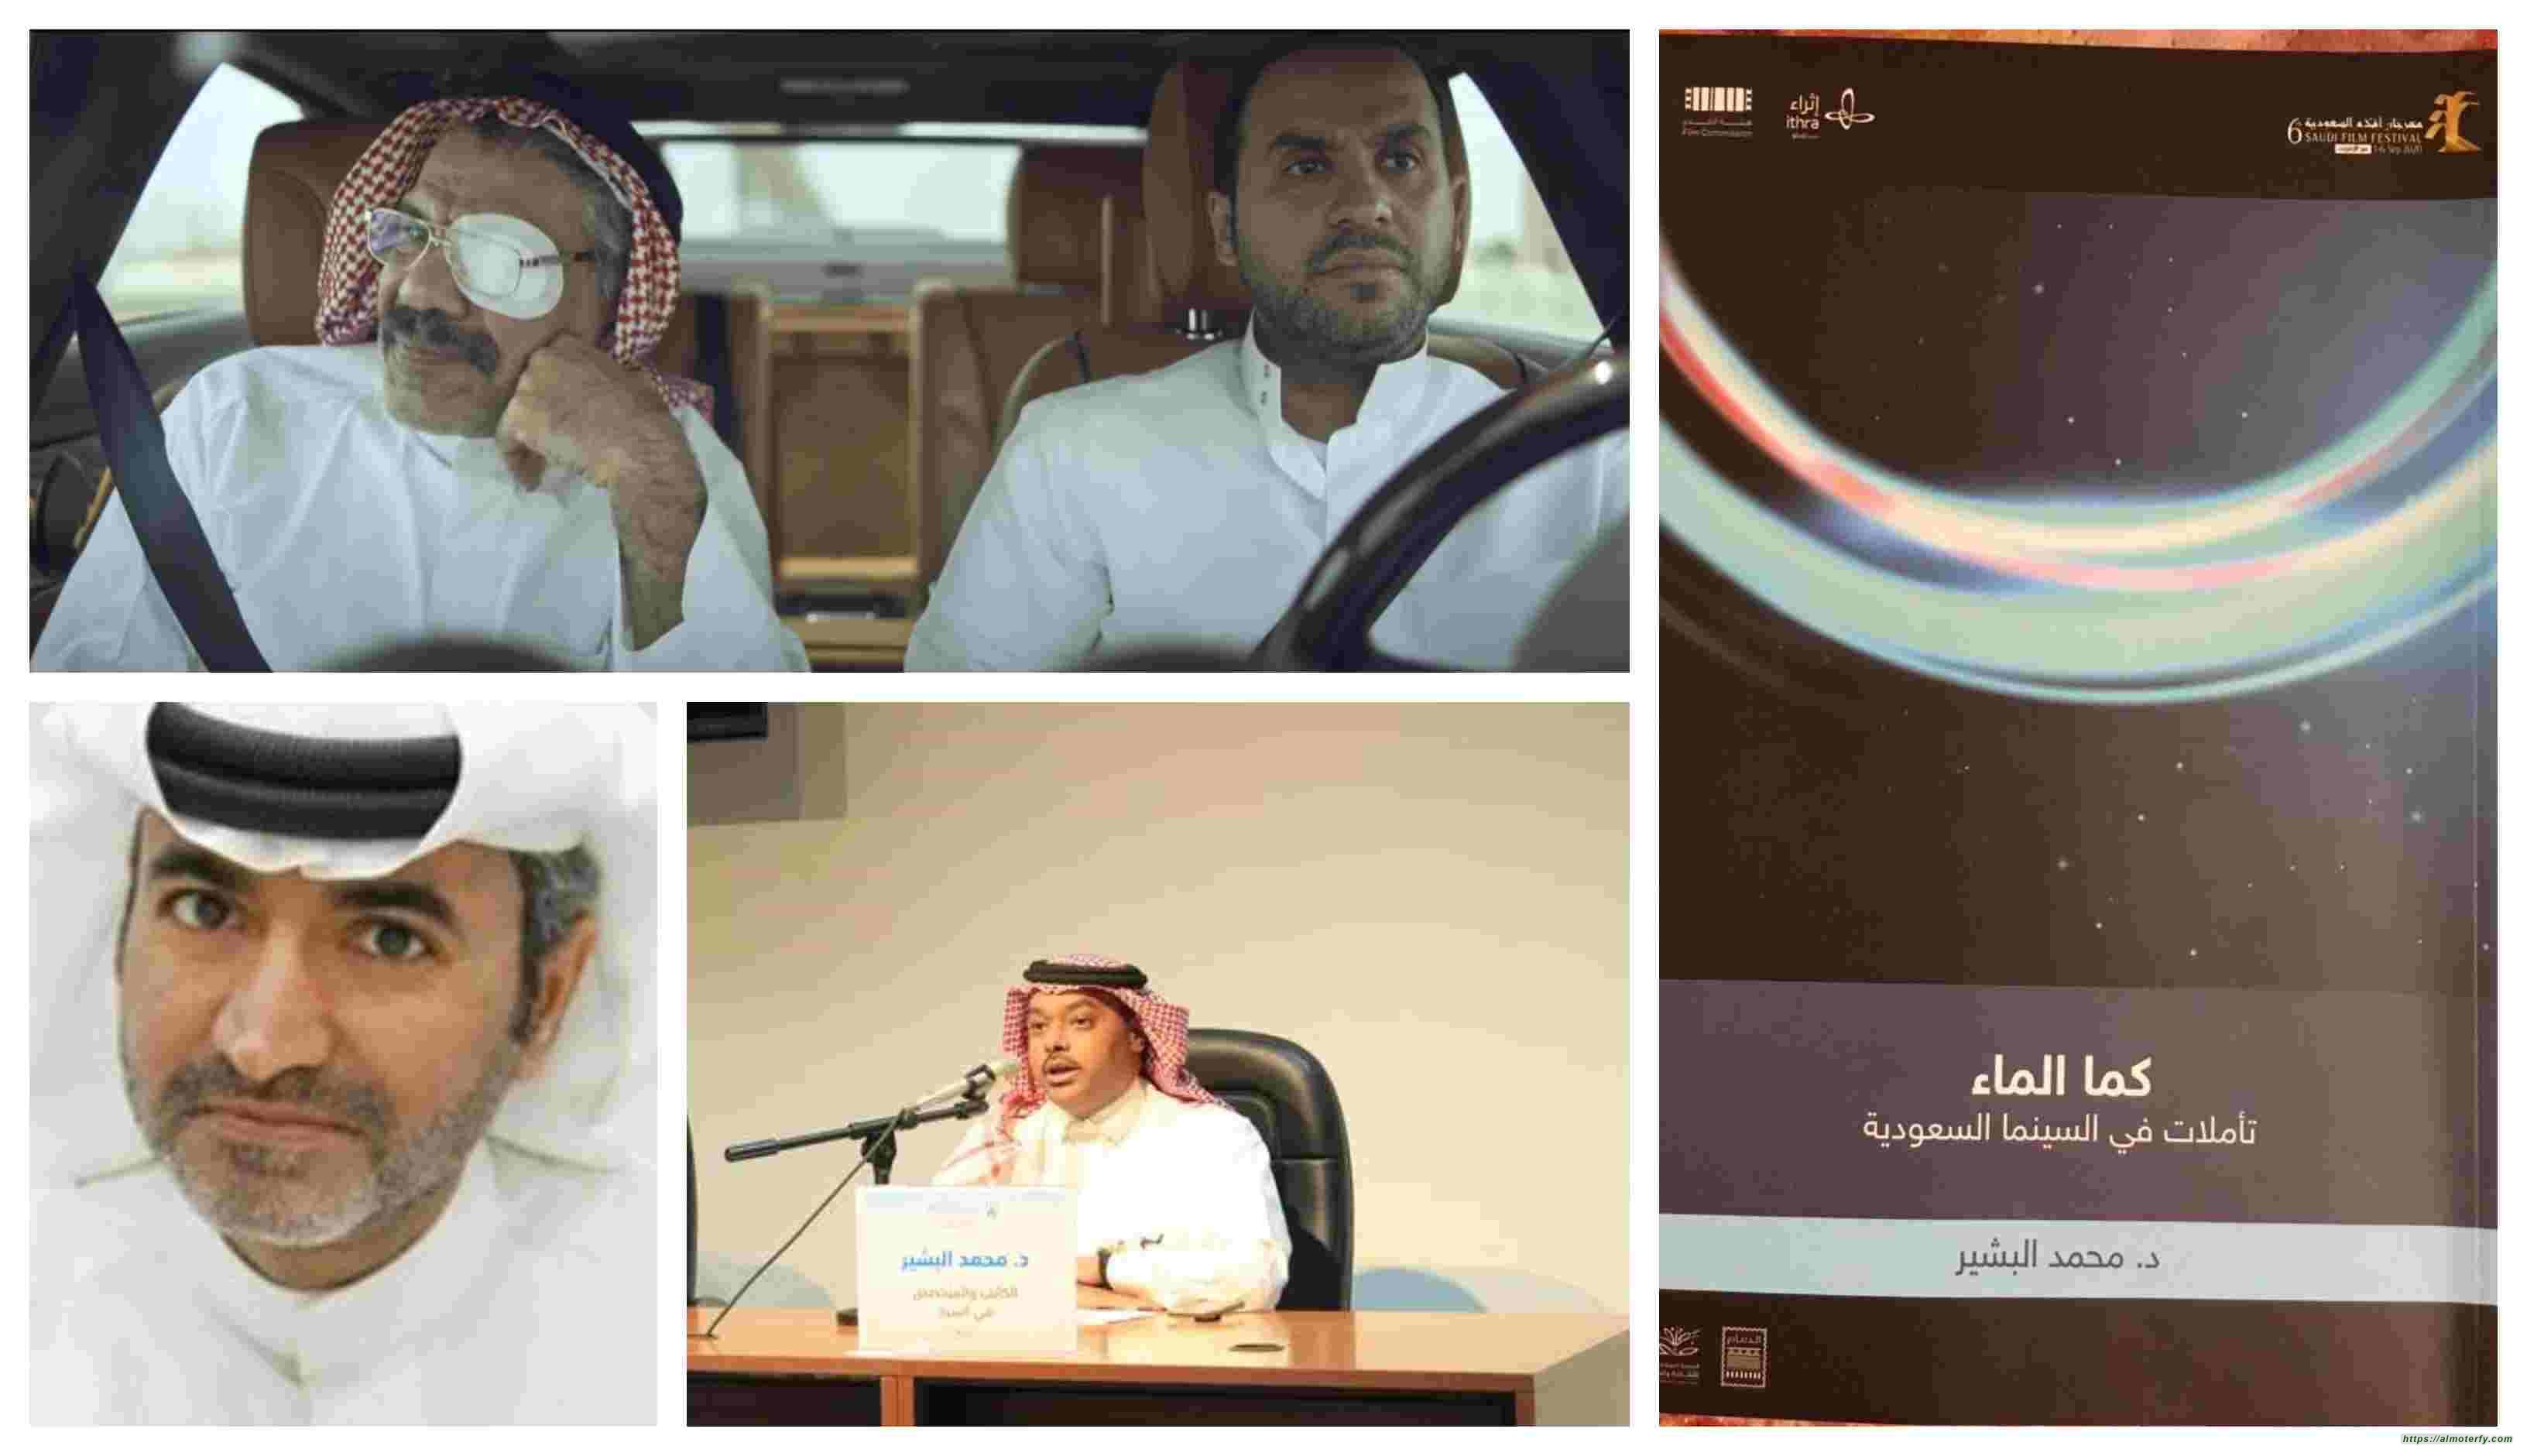 متفائلاً بسينما سعودية مقبلة  محمد البشيّر يجيب على أسئلة الأفلام السعودية في كتابه "كما الماء"